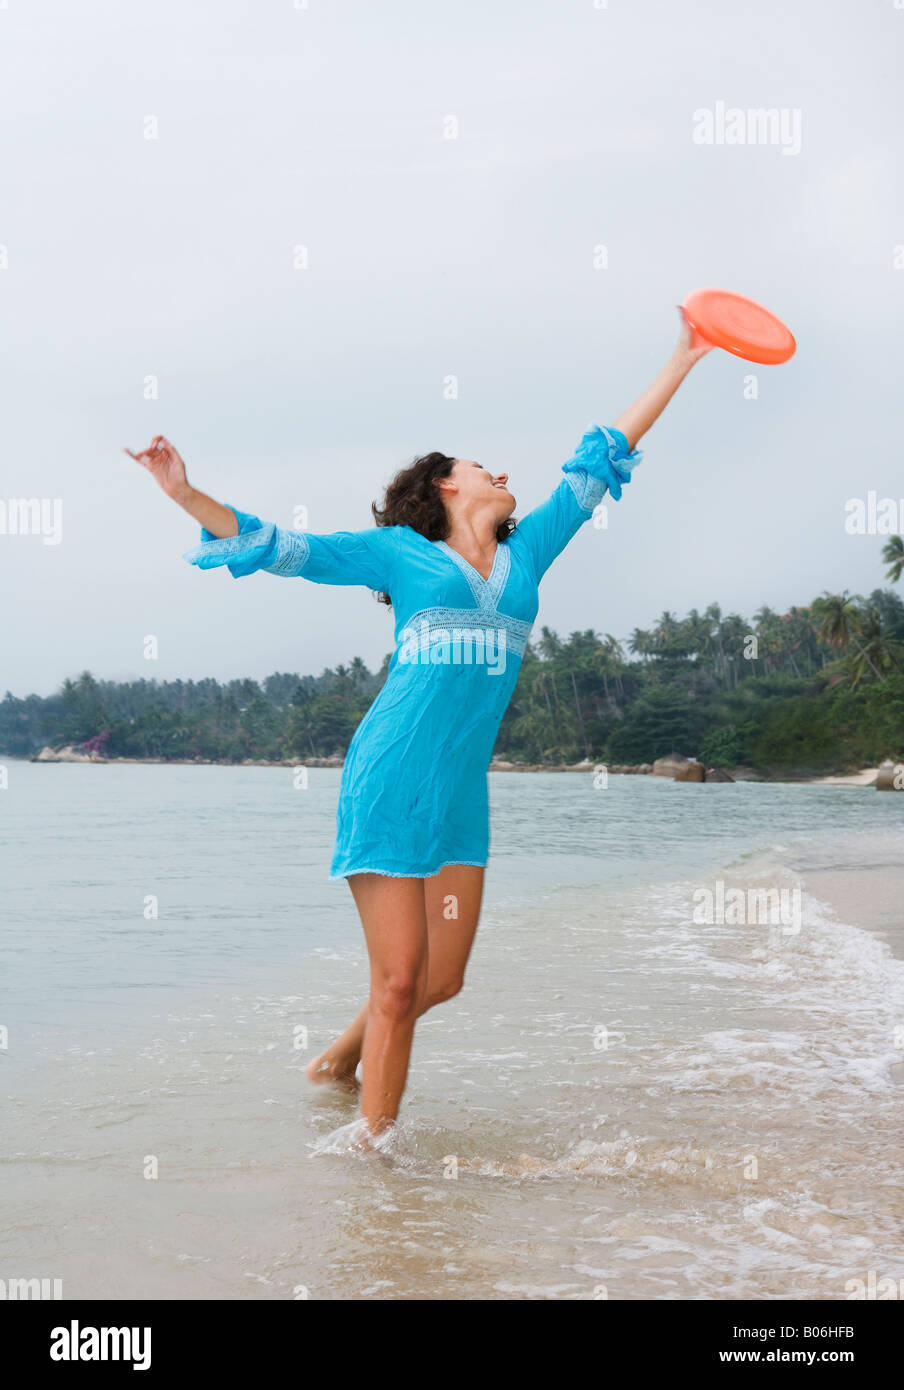 Giovane donna gioca frisbee sulla spiaggia Foto Stock